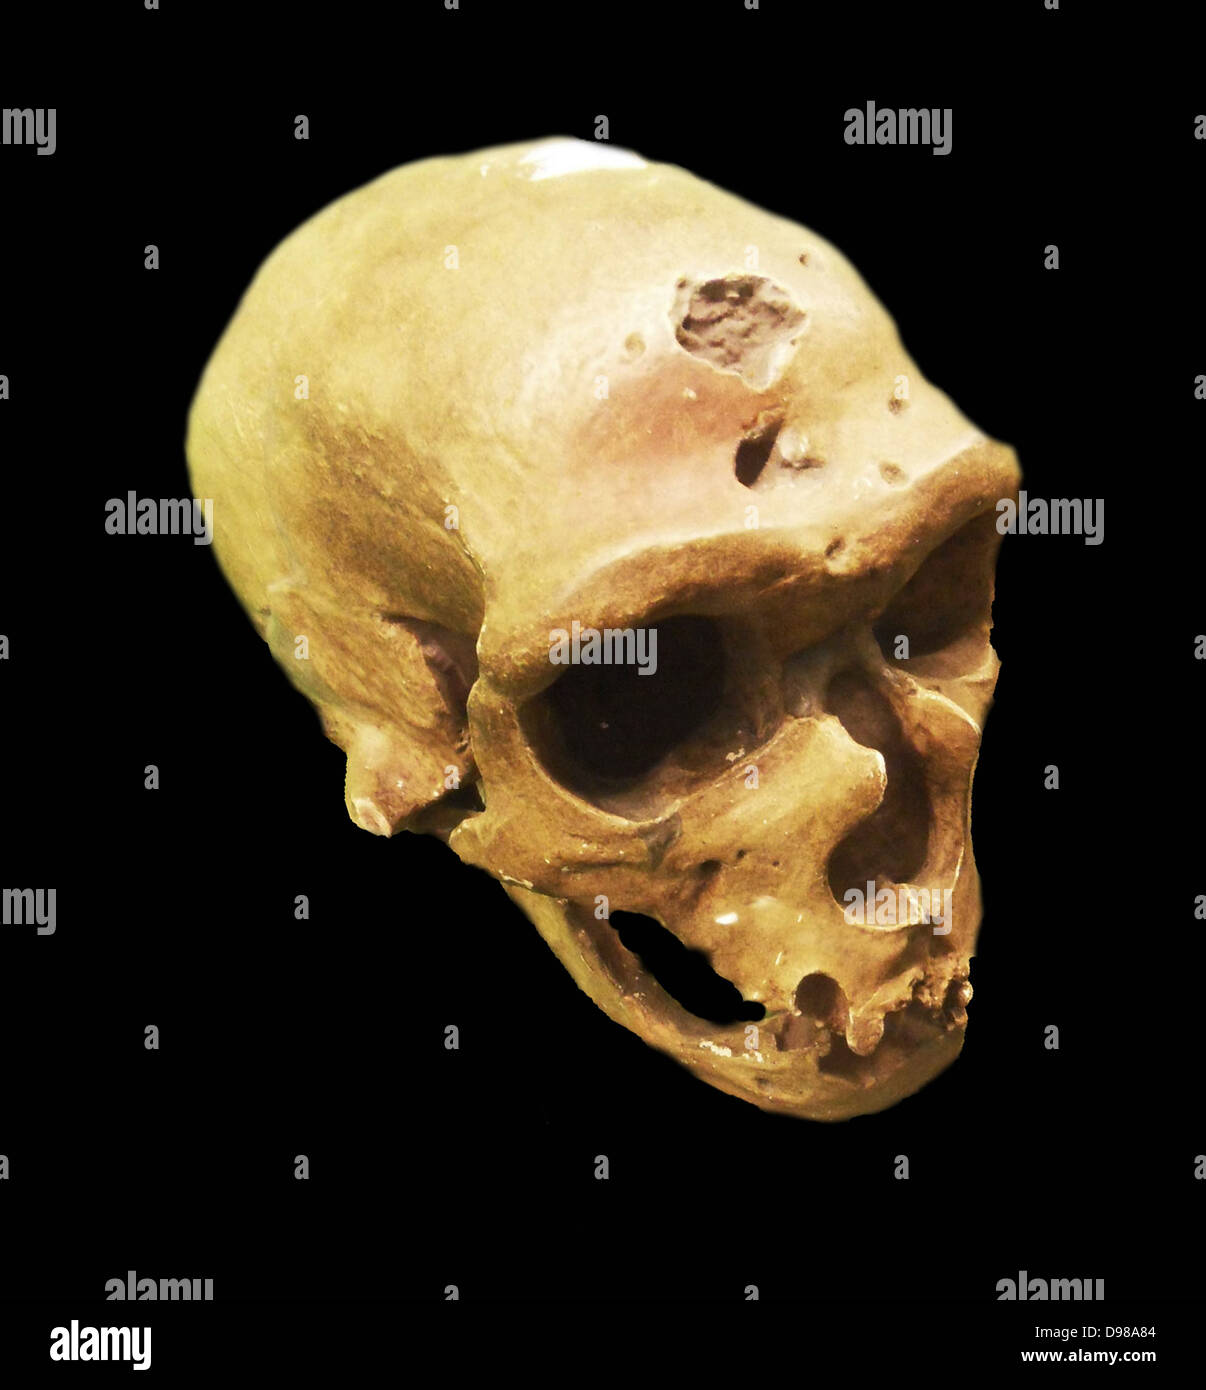 Der Neandertaler eine ausgestorbene Mitglied der Gattung Homo, die sich aus dem Pleistozän Exemplare in Europa gefunden und Teile der westlichen und zentralen Asien bekannt ist. Neandertaler sind entweder als Unterart (oder Rasse) von Menschen (Homo sapiens neanderthalensis) oder als separate Arten (Homo Neanderthalensis). Stockfoto